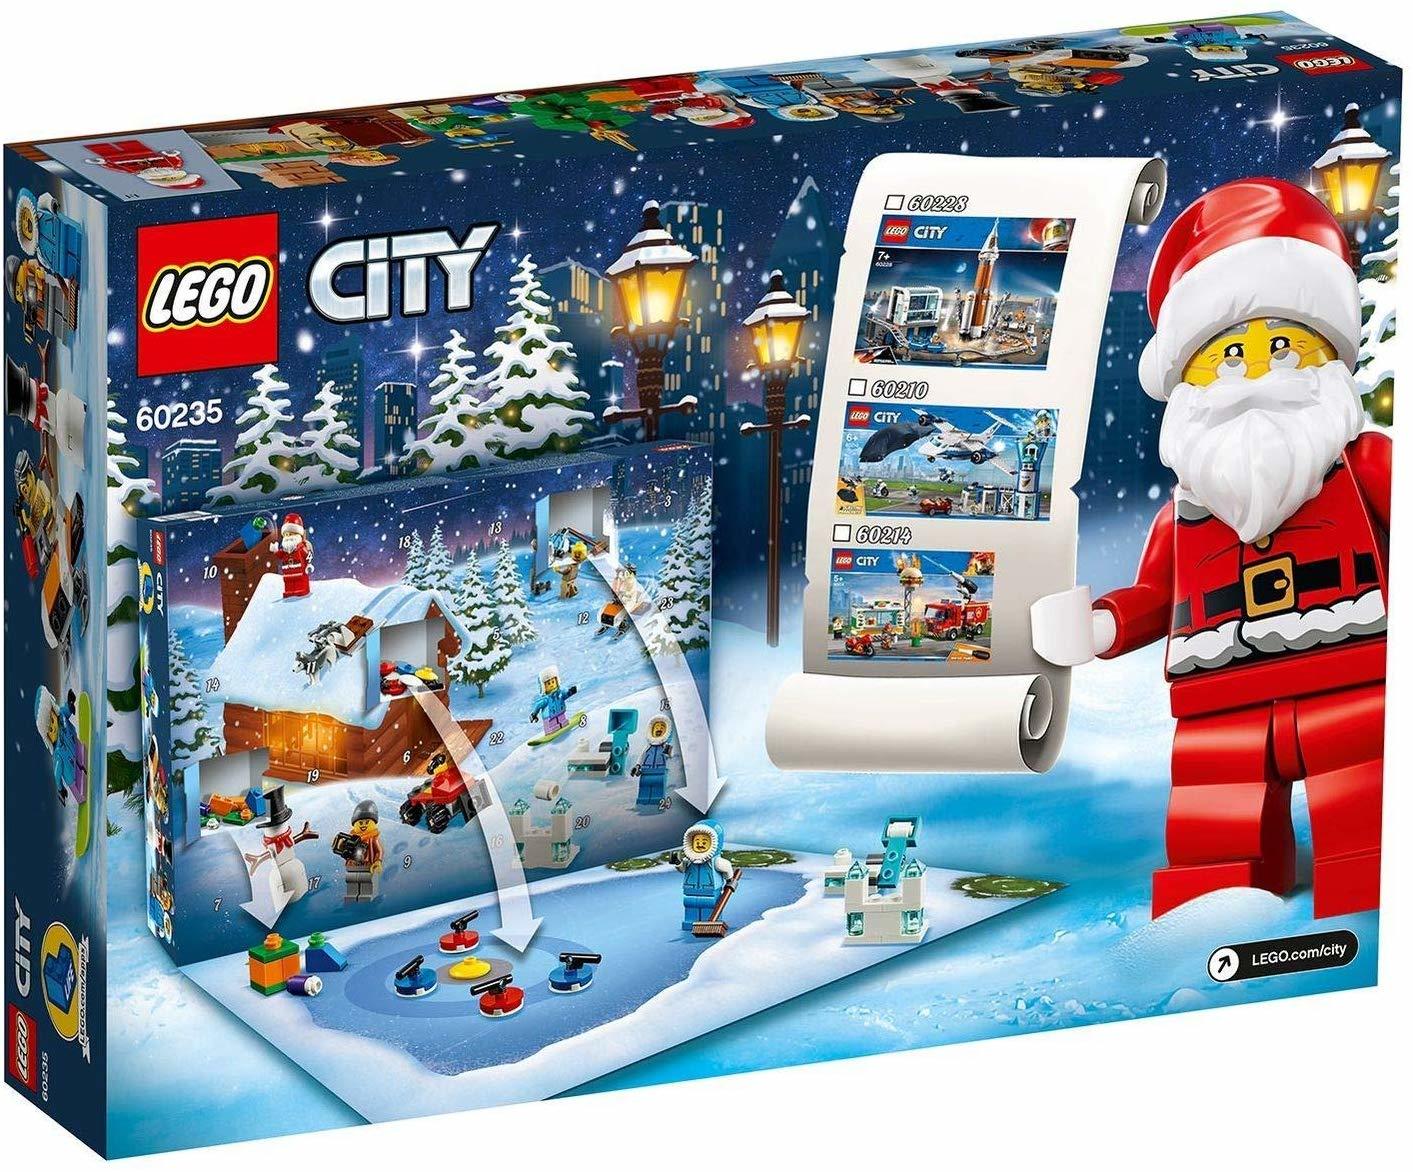 lego city advent calendar